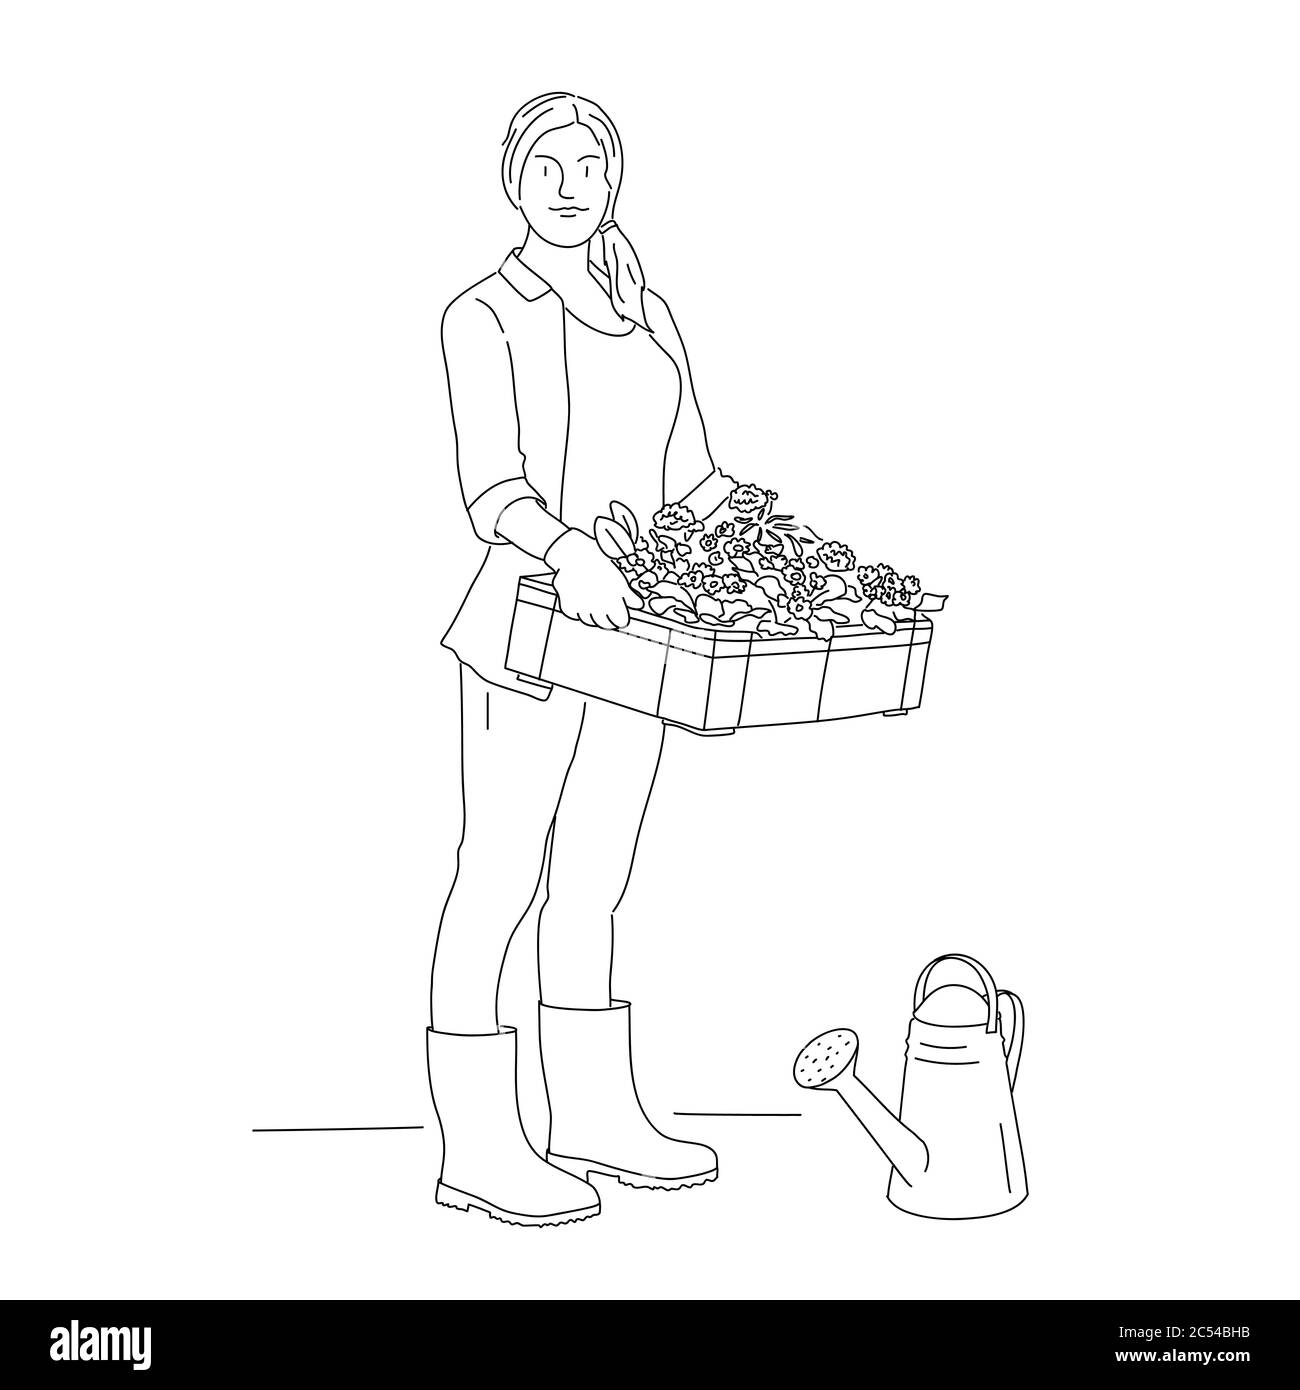 Linienzeichnung der Gärtnerin mit einer Schachtel Blumen und Gießkanne. Vektorgrafik. Stock Vektor